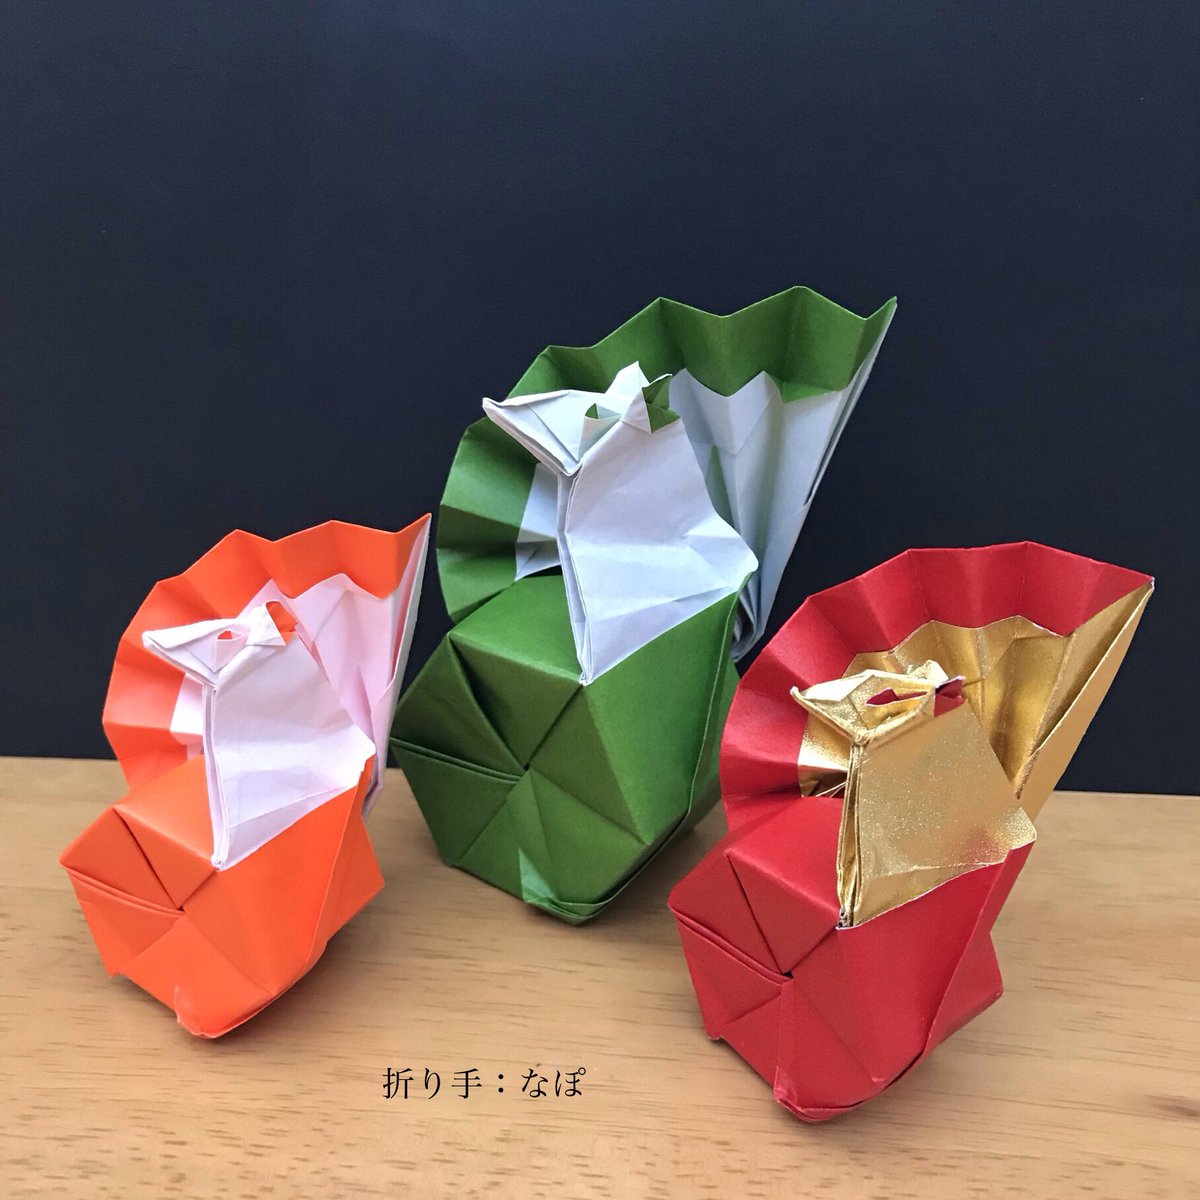 なぽ در توییتر トキポン さんの 福ねずみ 35 と25 の折り紙で 25 も可愛いけど 35 で華やかな折り紙があると 存在感があってお正月飾りにいいんだけどなぁ 折り紙作品 Origami